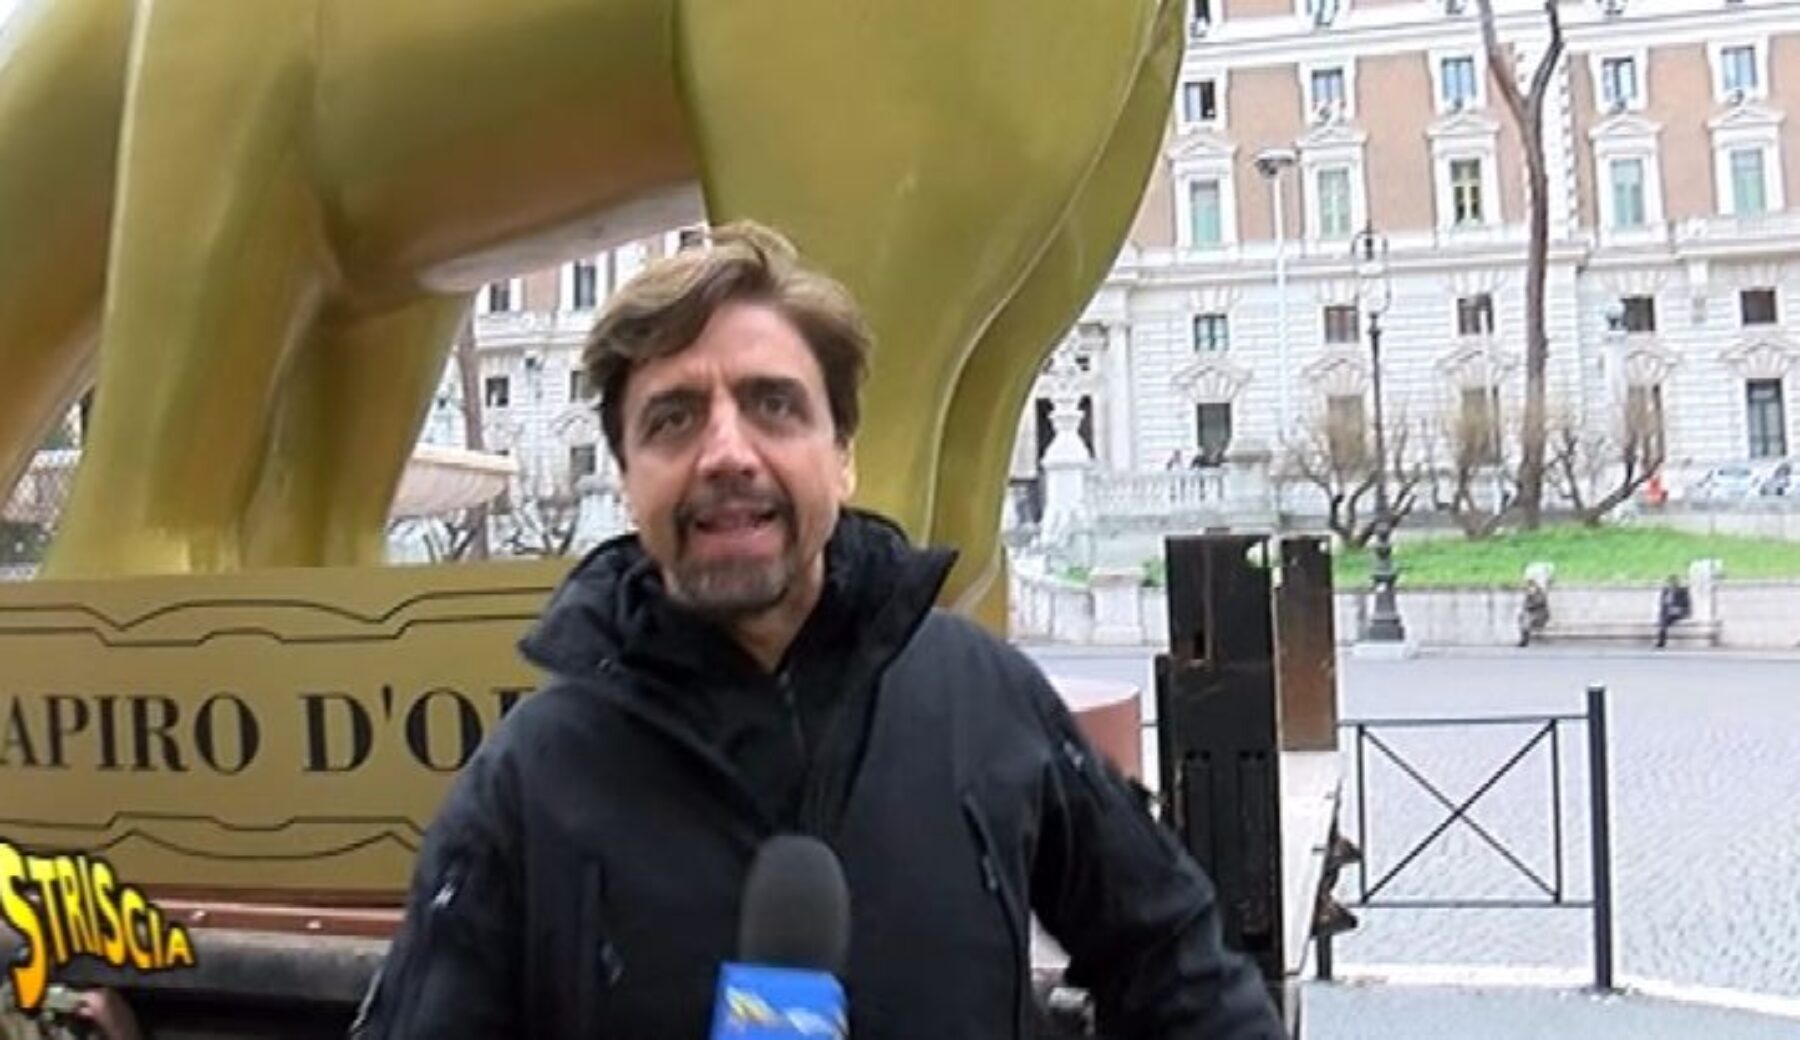 Tapiro d’oro gigante al Ministro dell’Interno Marco Minniti
per le falle nel sistema di sicurezza antiterrorismo a Milano